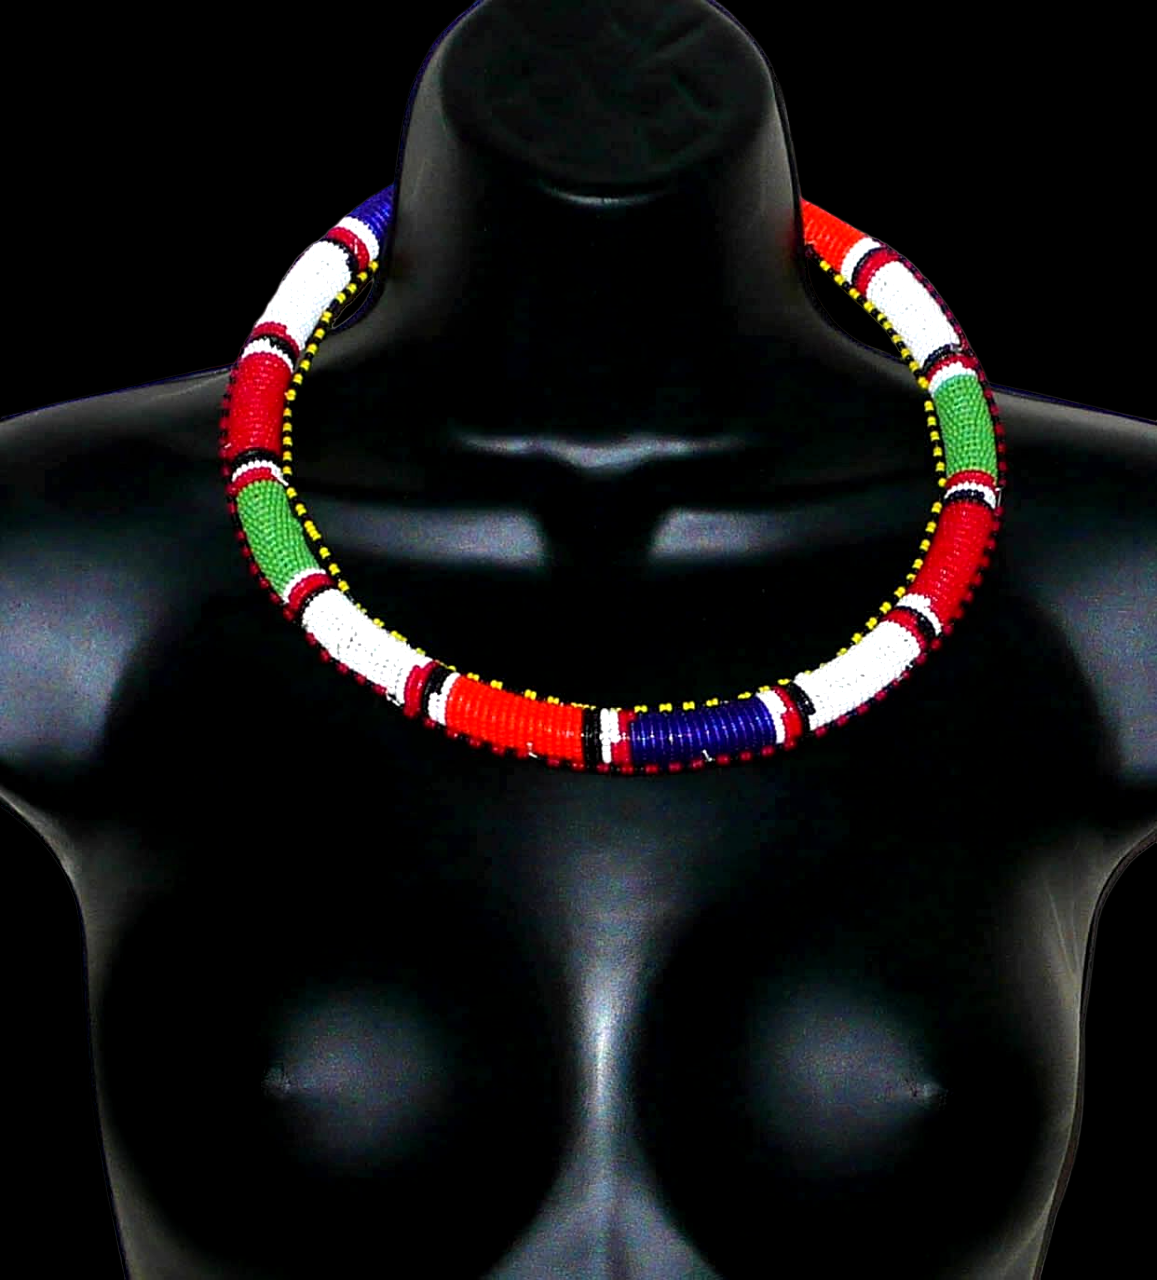 Collier africain tubulaire à motifs traditionnels Massai composé de perles de rocaille rouges, vertes, blanches, bleu foncé et orange. Il mesure 22 cm de long, la circonférence autour du cou est de 56 cm et son épaisseur de 1,5 cm. Timeless Fineries